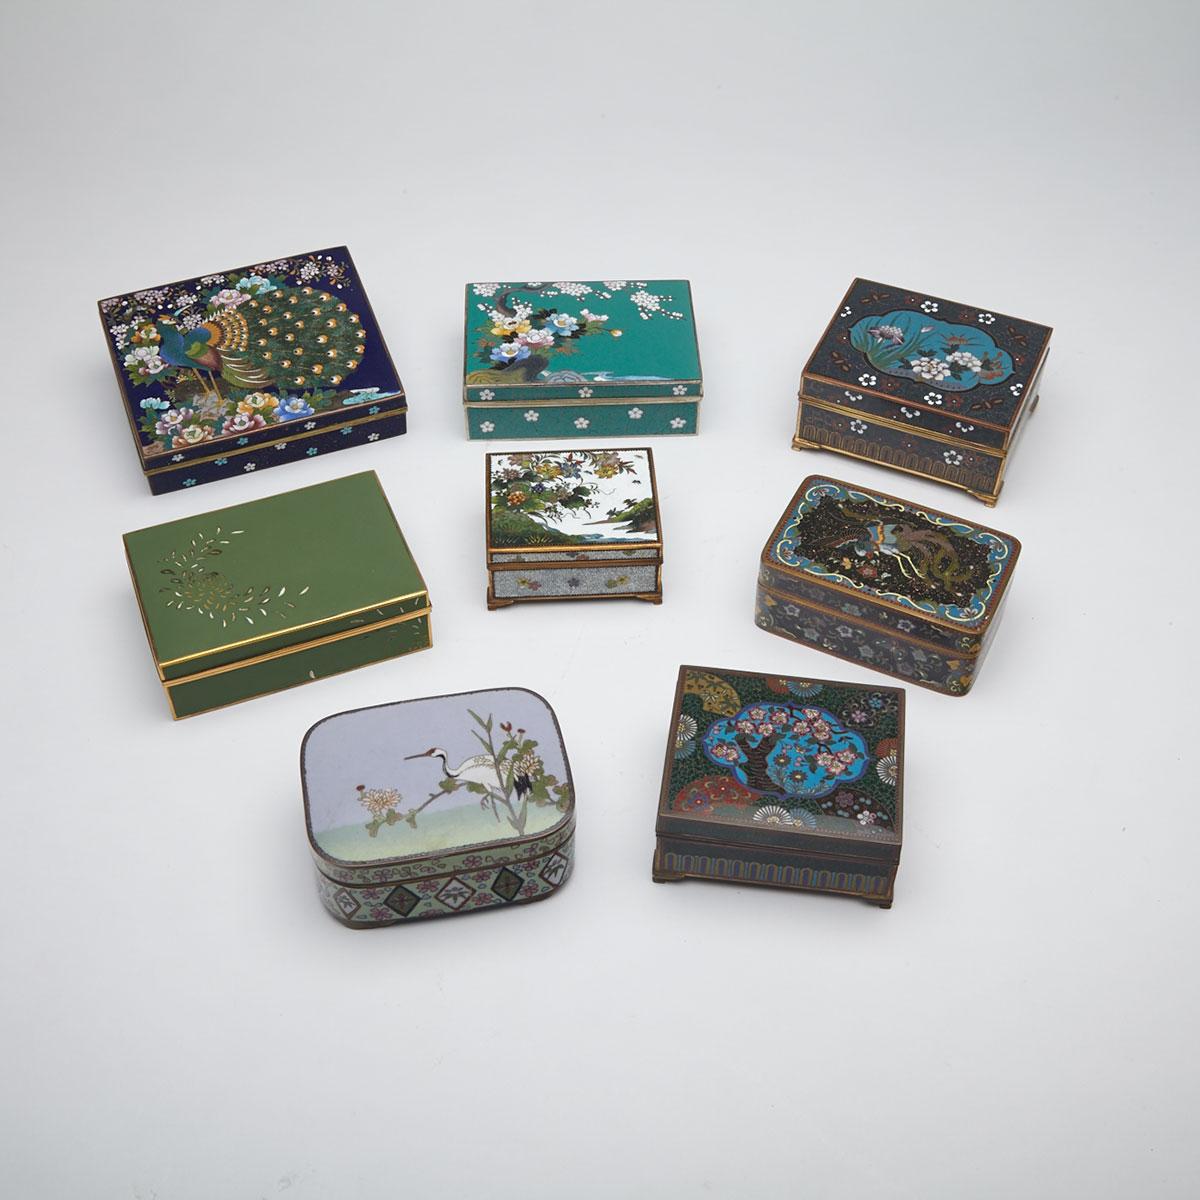 Nine Cloisonné Enamel Square Form Boxes, Japan, Early 20th Century